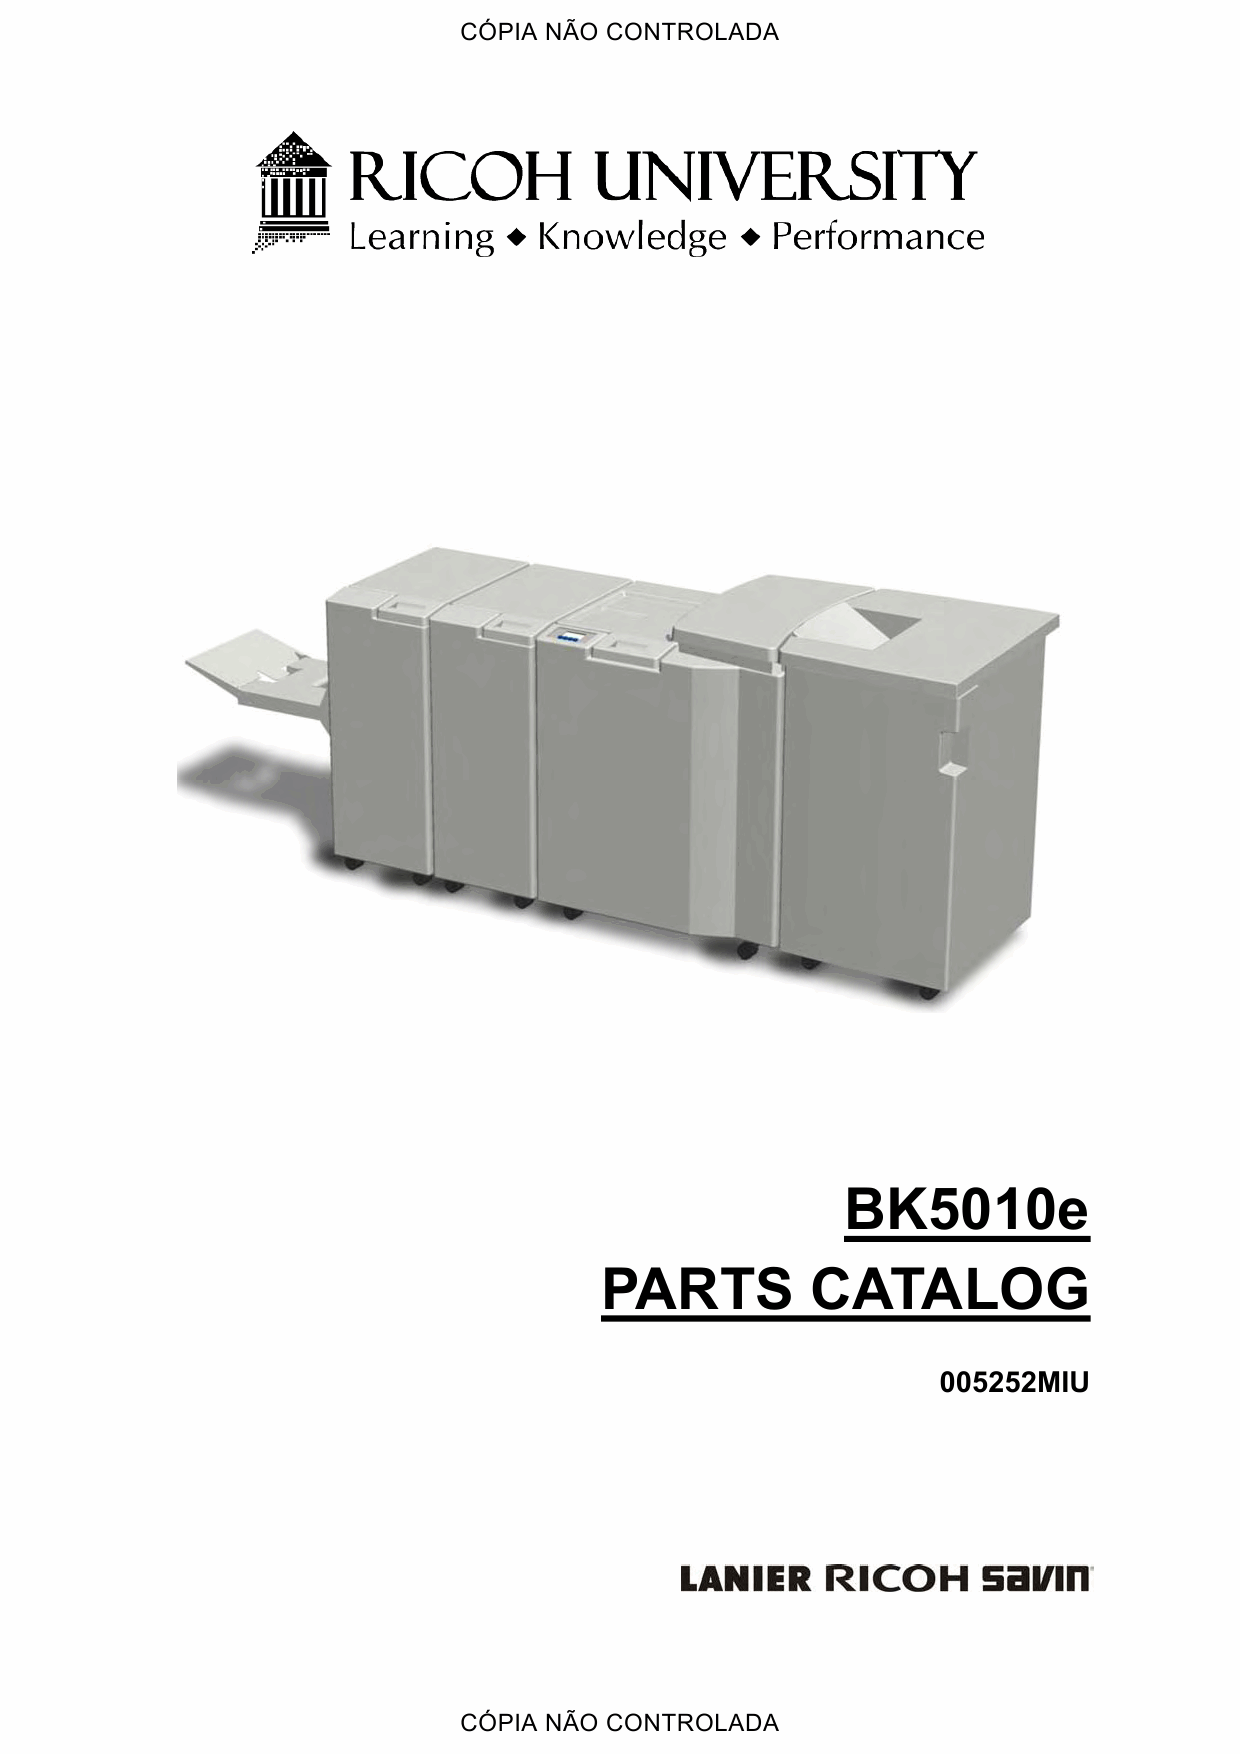 RICOH Options BK5010 Parts Catalog PDF download-1